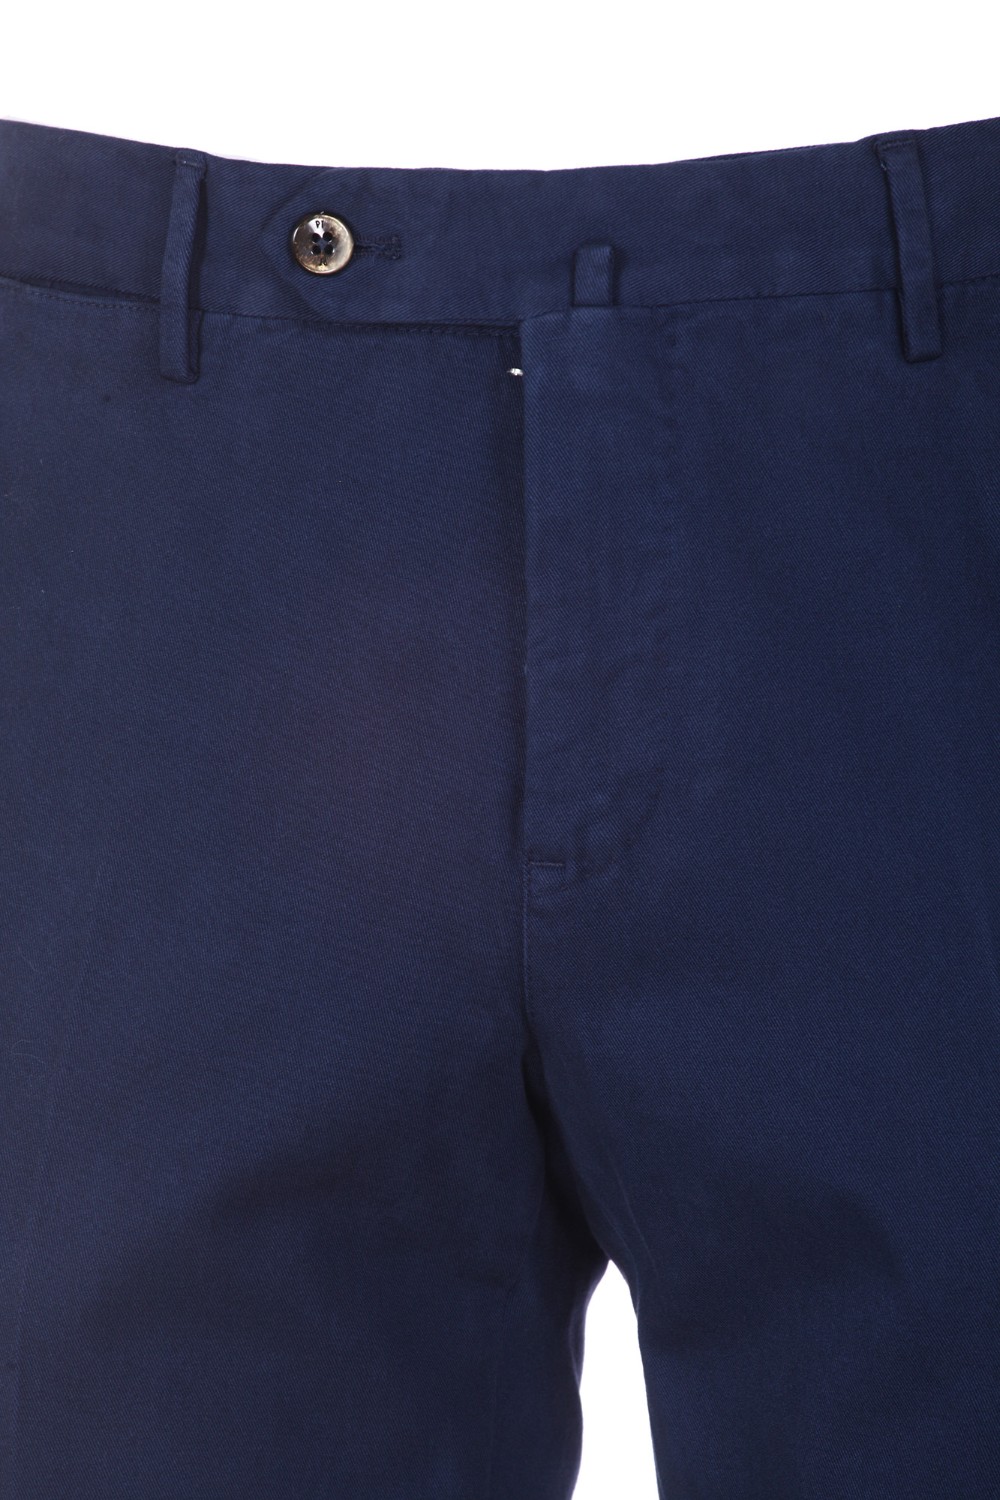 shop PT01 Saldi Pantalone: PT01 pantalone in cotone elasticizzato.
Slim fit.
Tasche frontali e posteriori.
Composizione: 69% modal 28% cotone 3% elastan.
Fabbricato in Italia.. COVT01Z00CL1 NU46-Y360 number 7963581